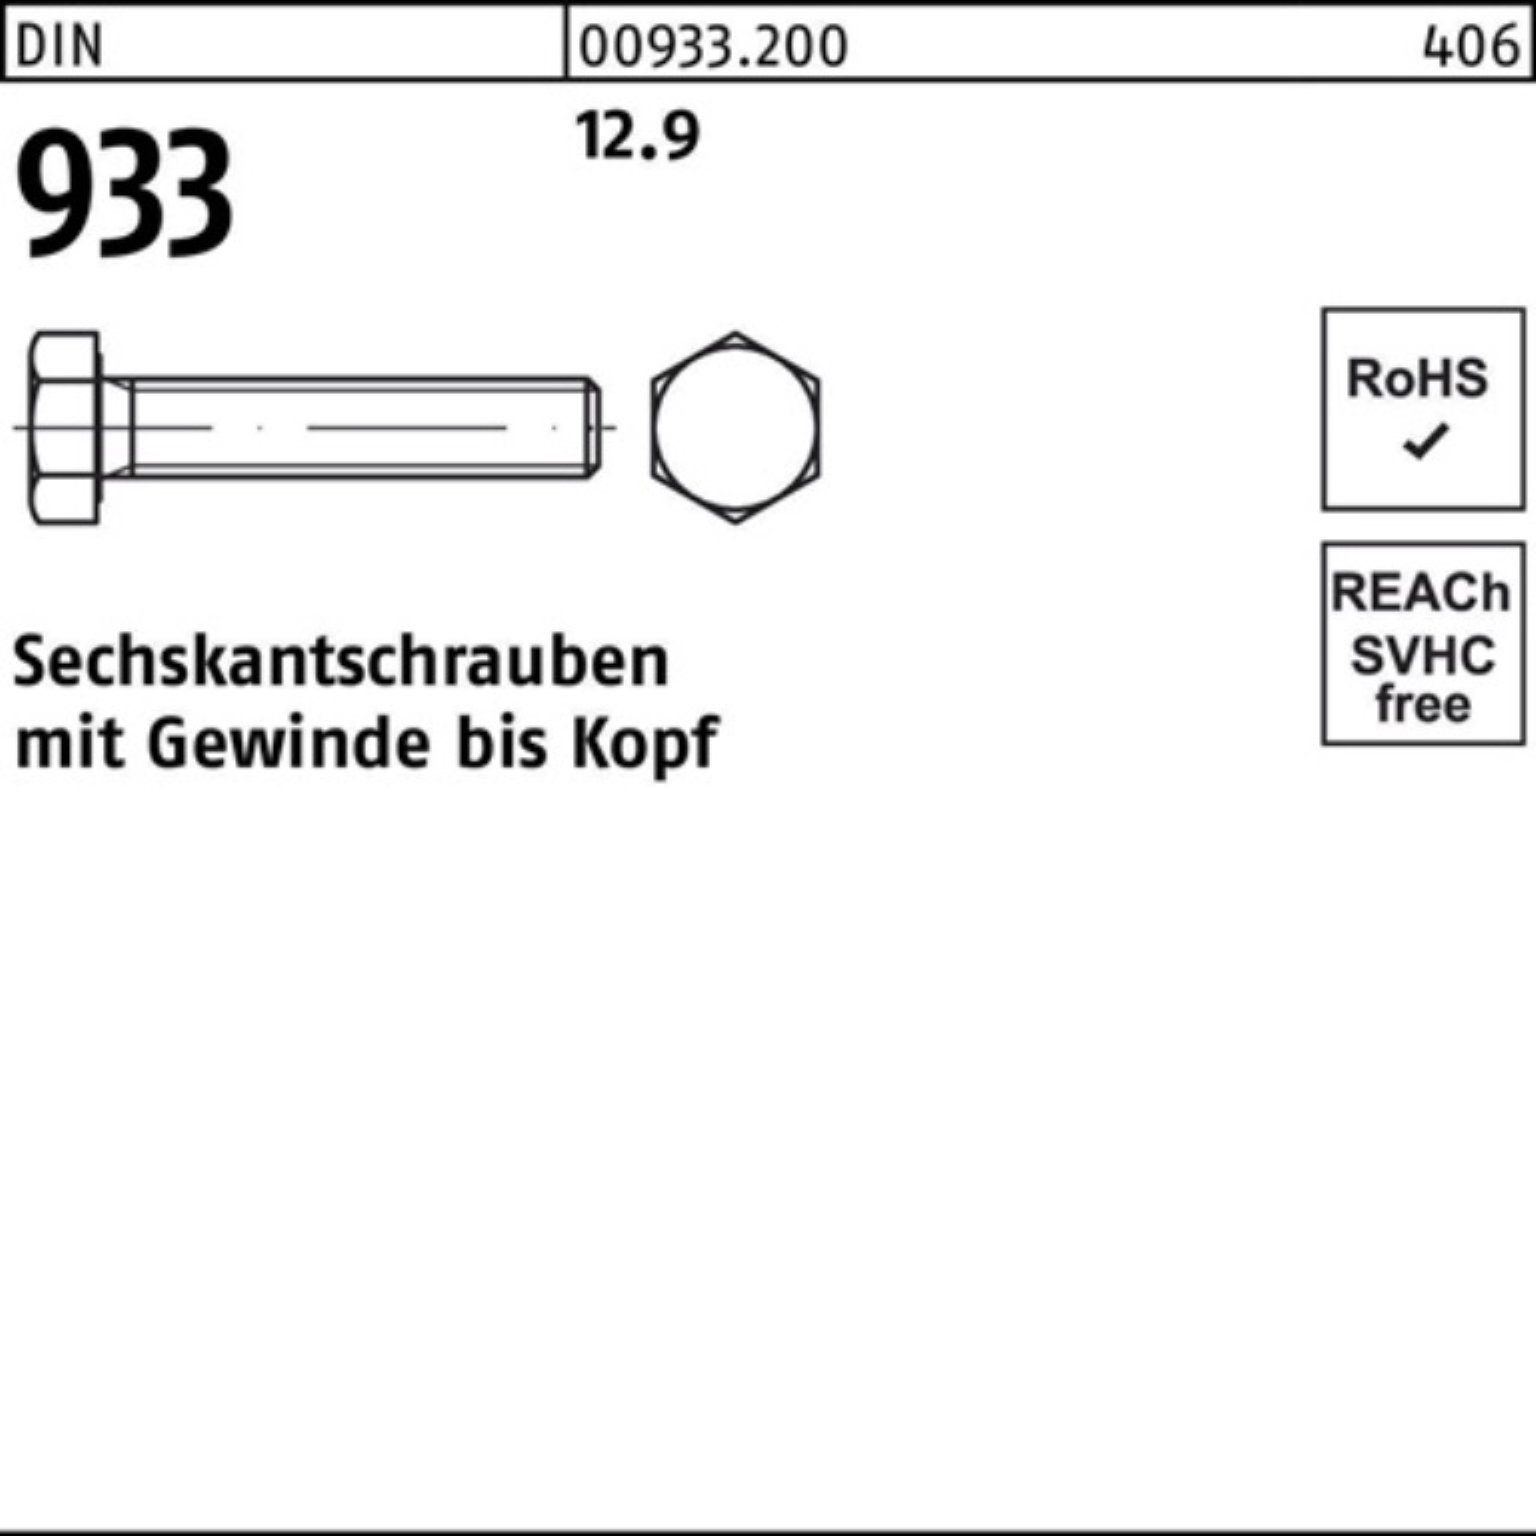 VG Pack 200er Sechskantschraube Reyher 30 933 M8x 200 12.9 DIN Stück 933 Sechskantschraube DIN